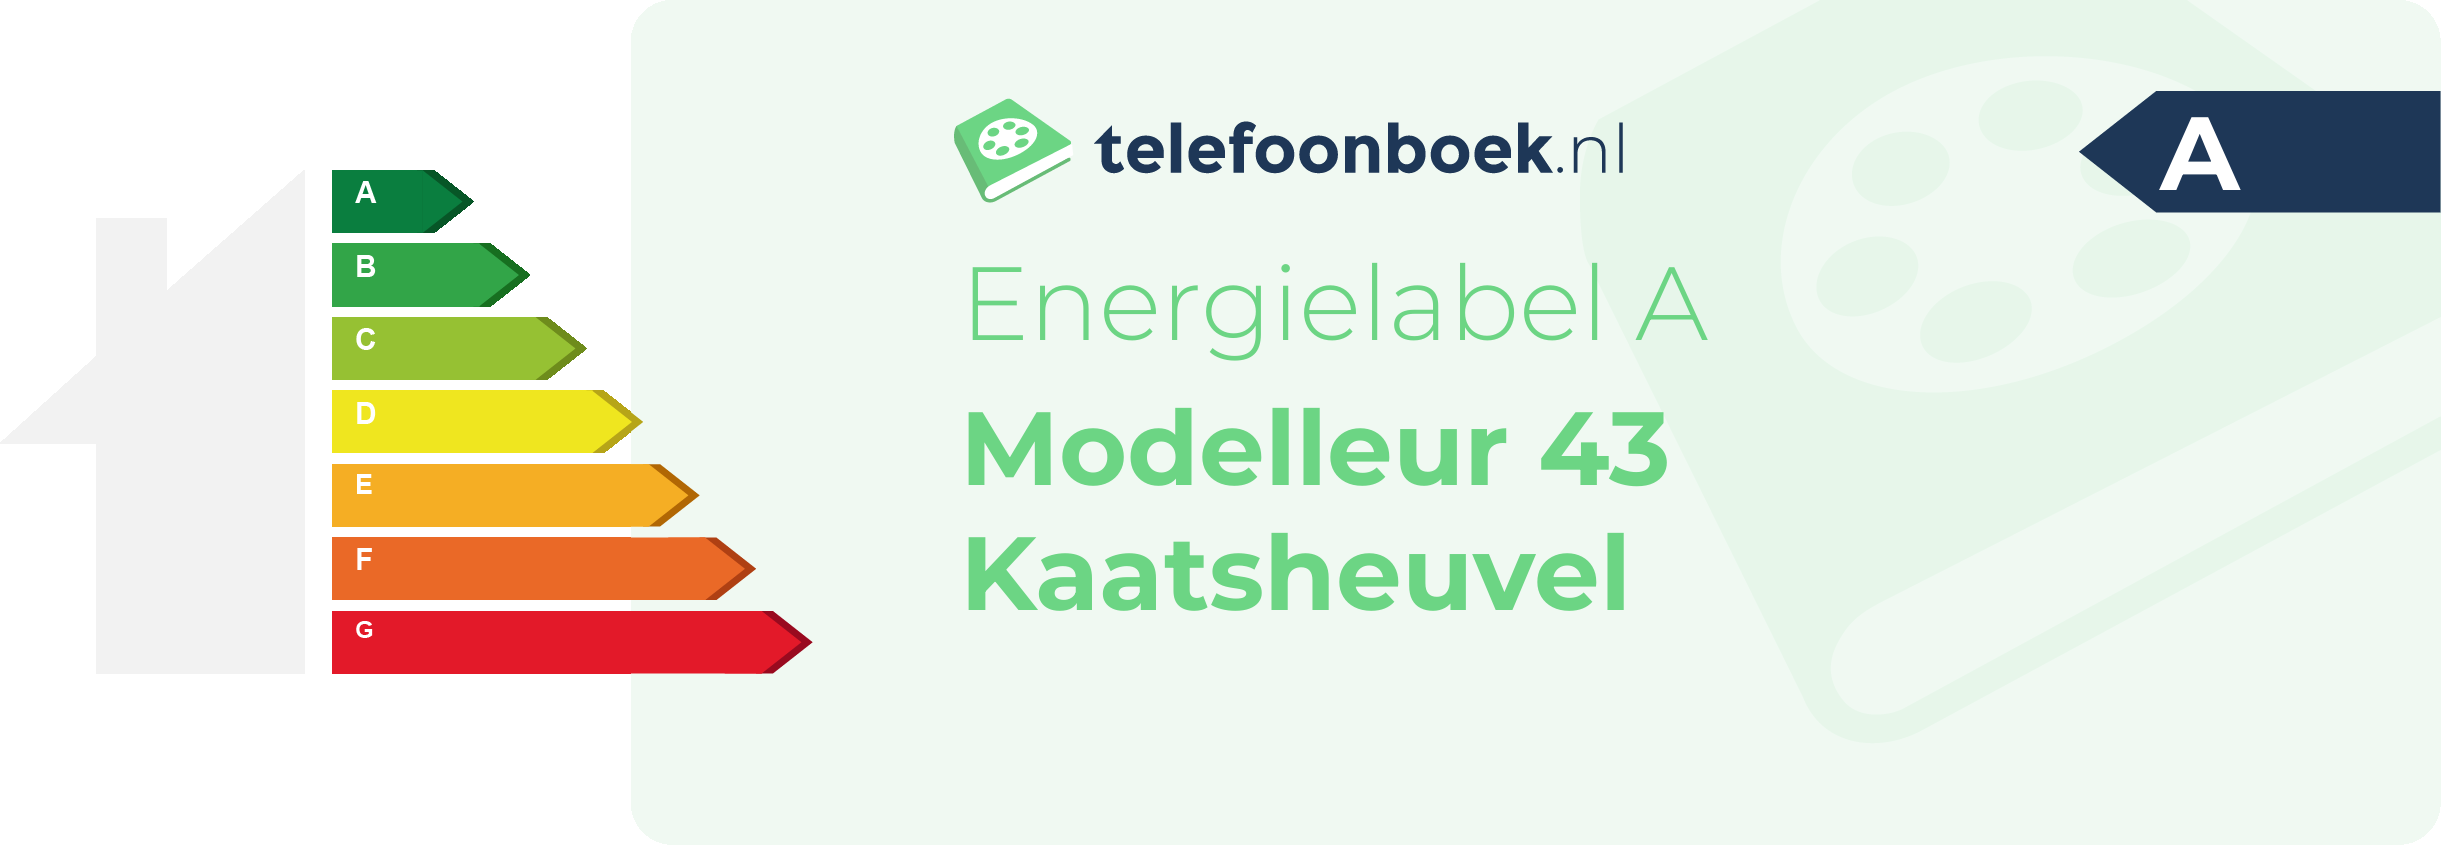 Energielabel Modelleur 43 Kaatsheuvel